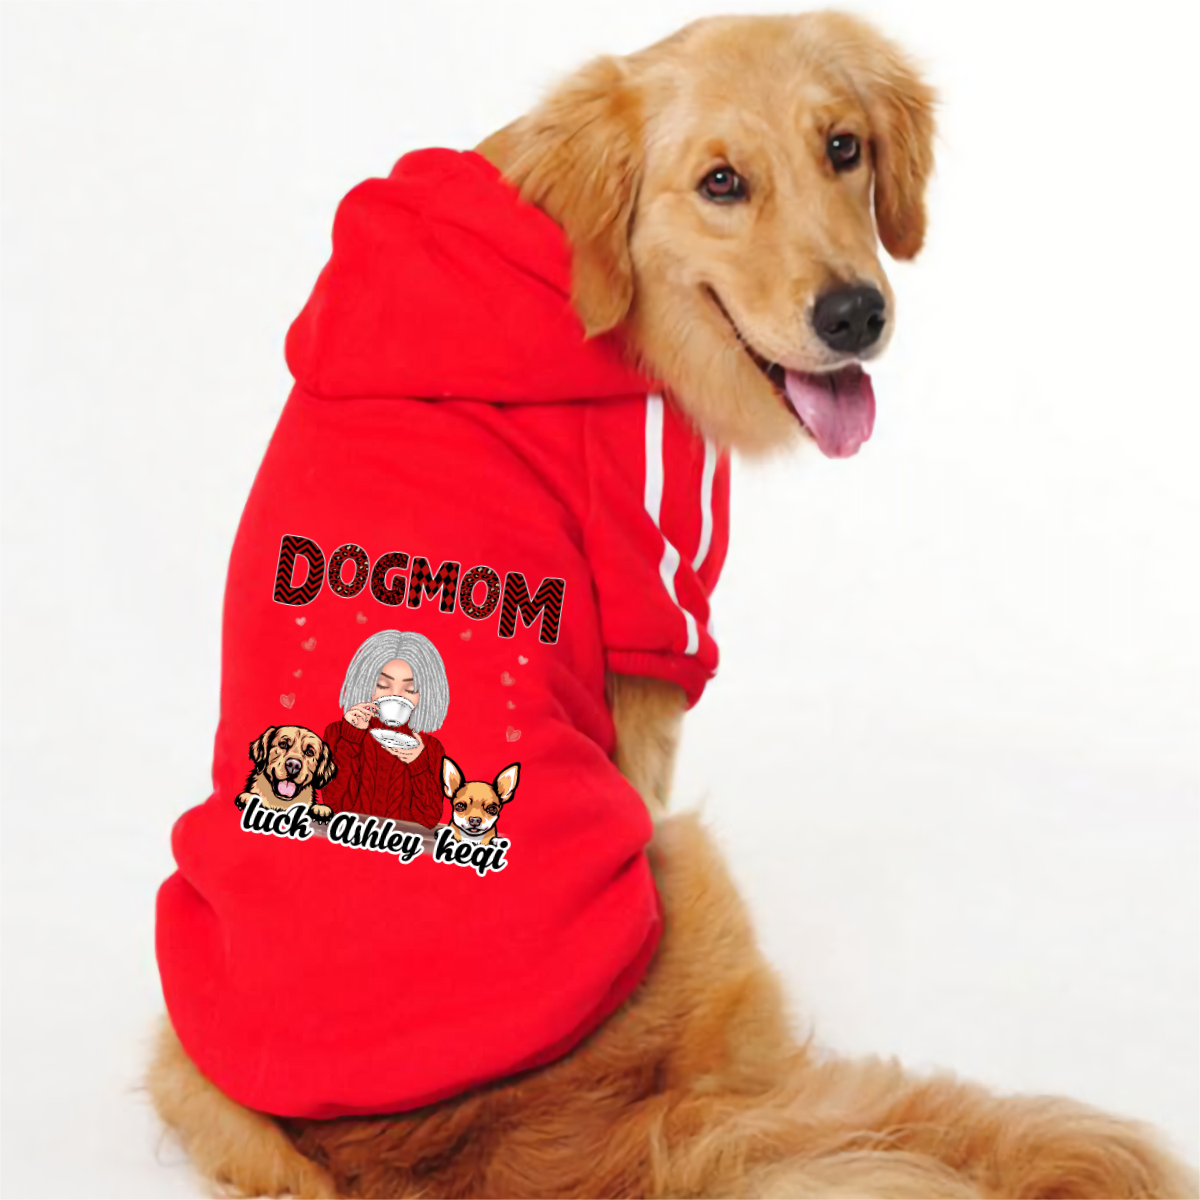 Dog Mom 赤柄のパーソナライズされた犬用服